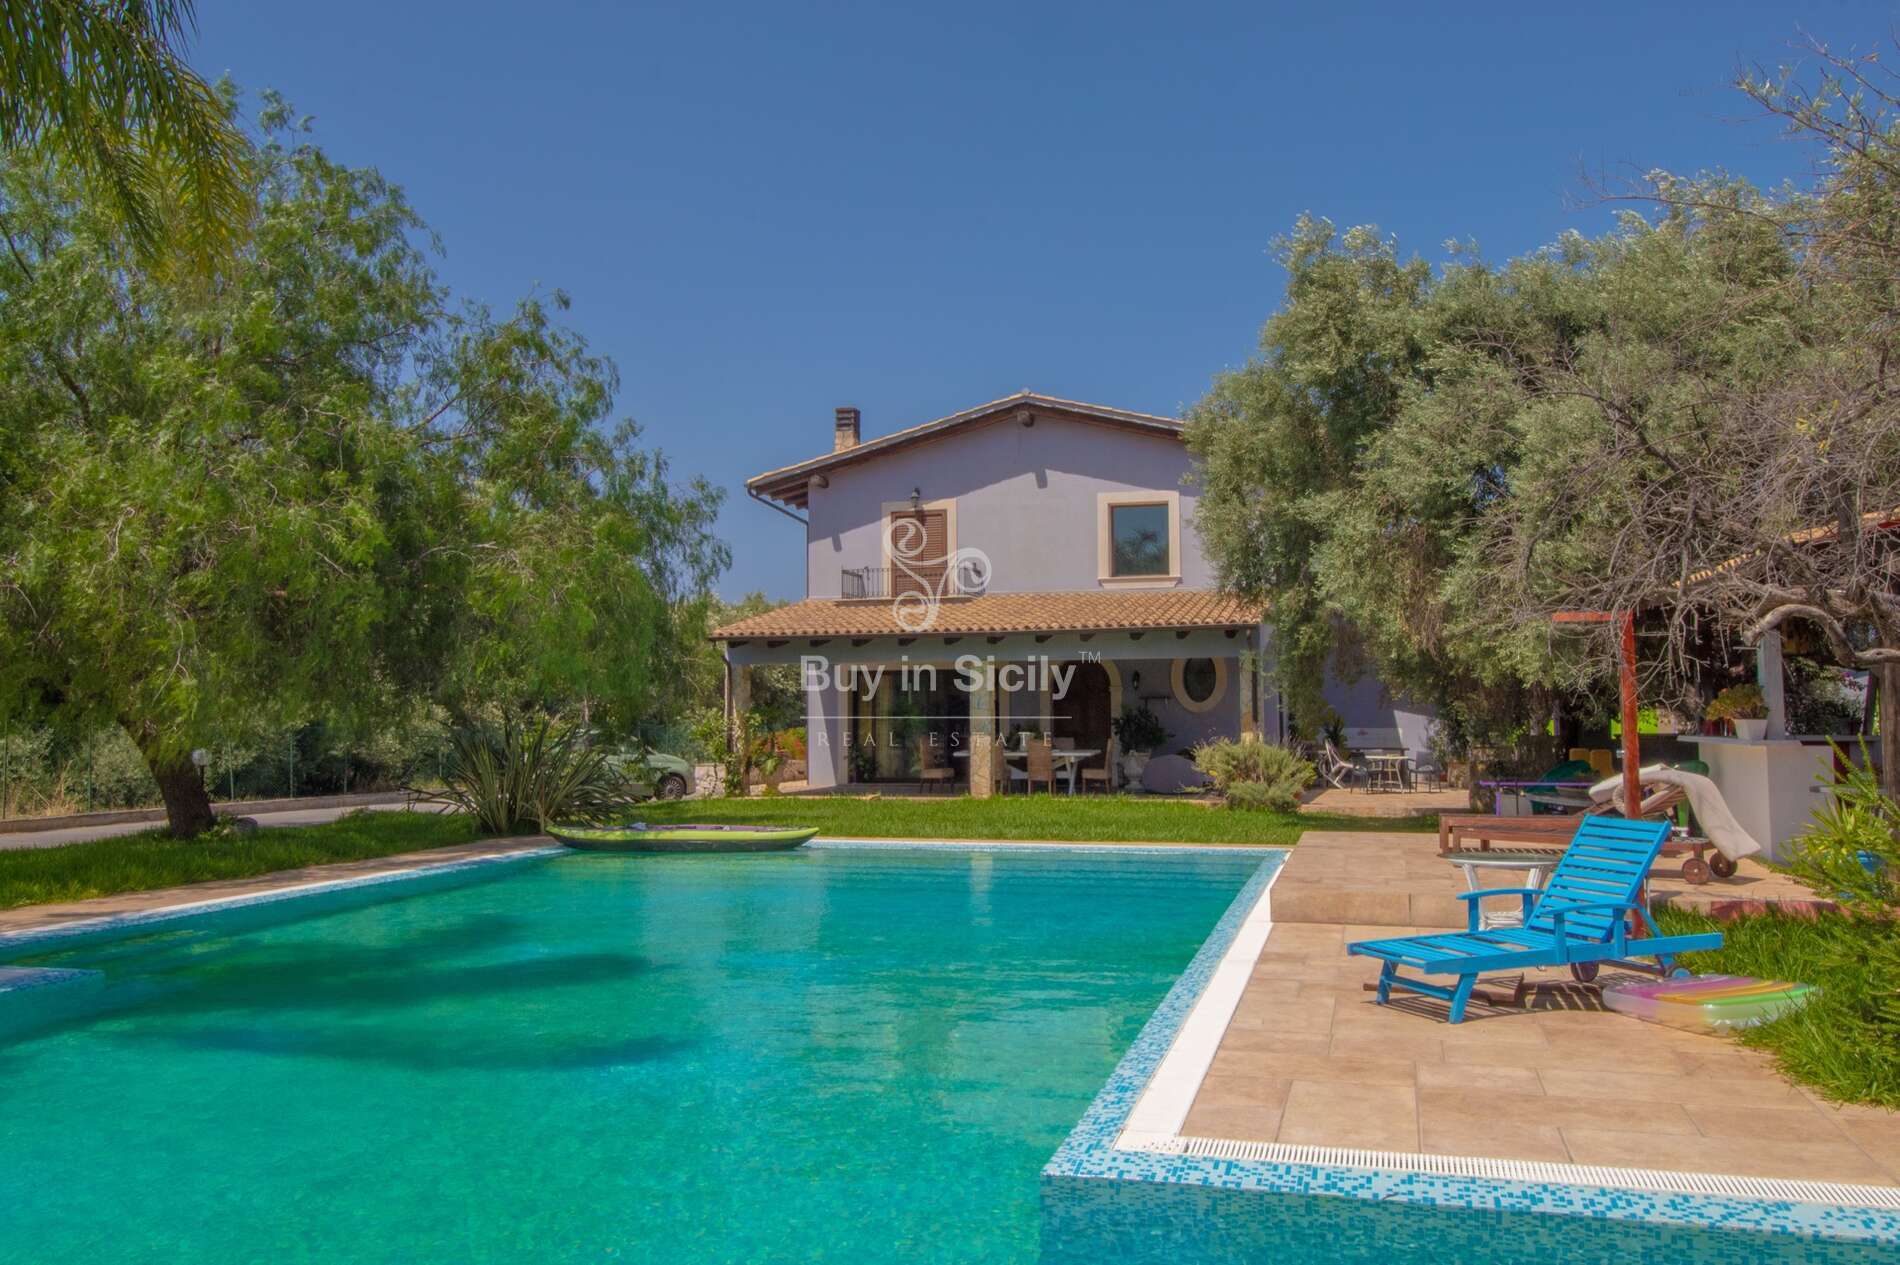 Elegante villa con piscina, immersa nel verde, sita a Floridia (SR).